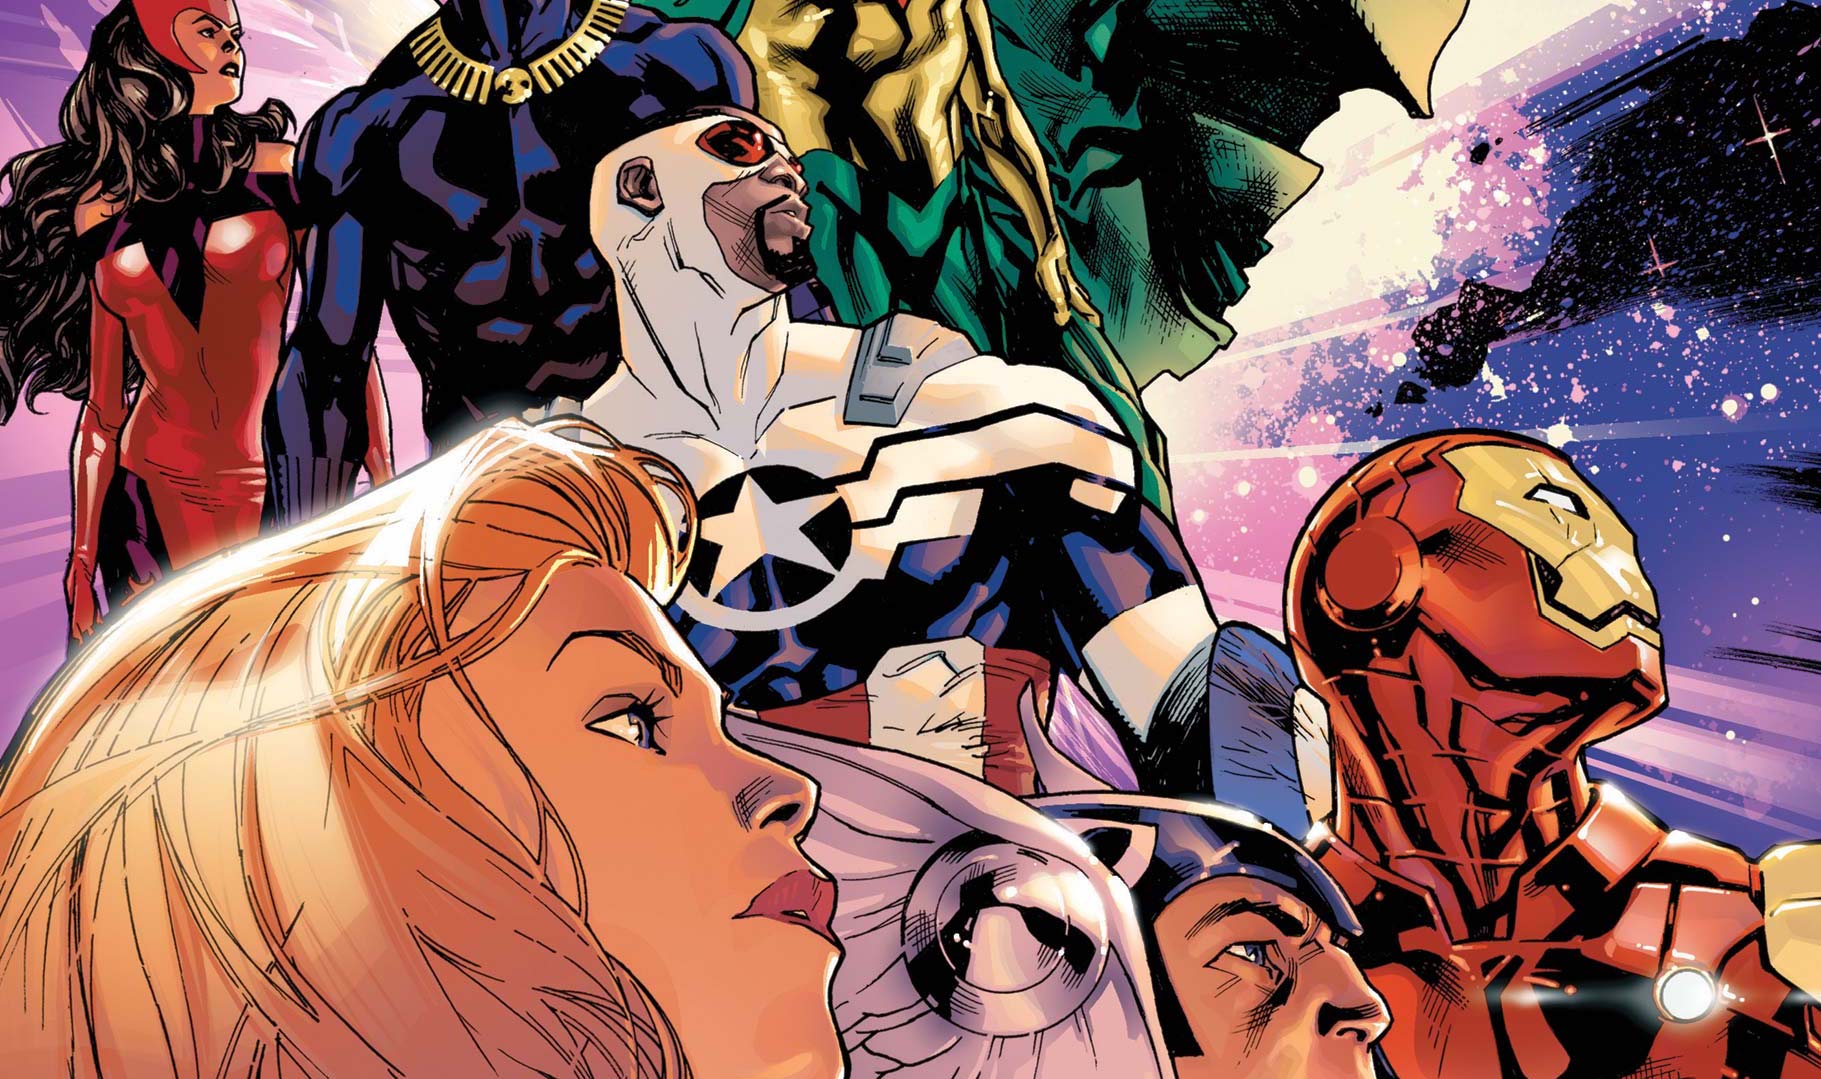 'Avengers' #1 establishes the team under Captain Marvel's leadership